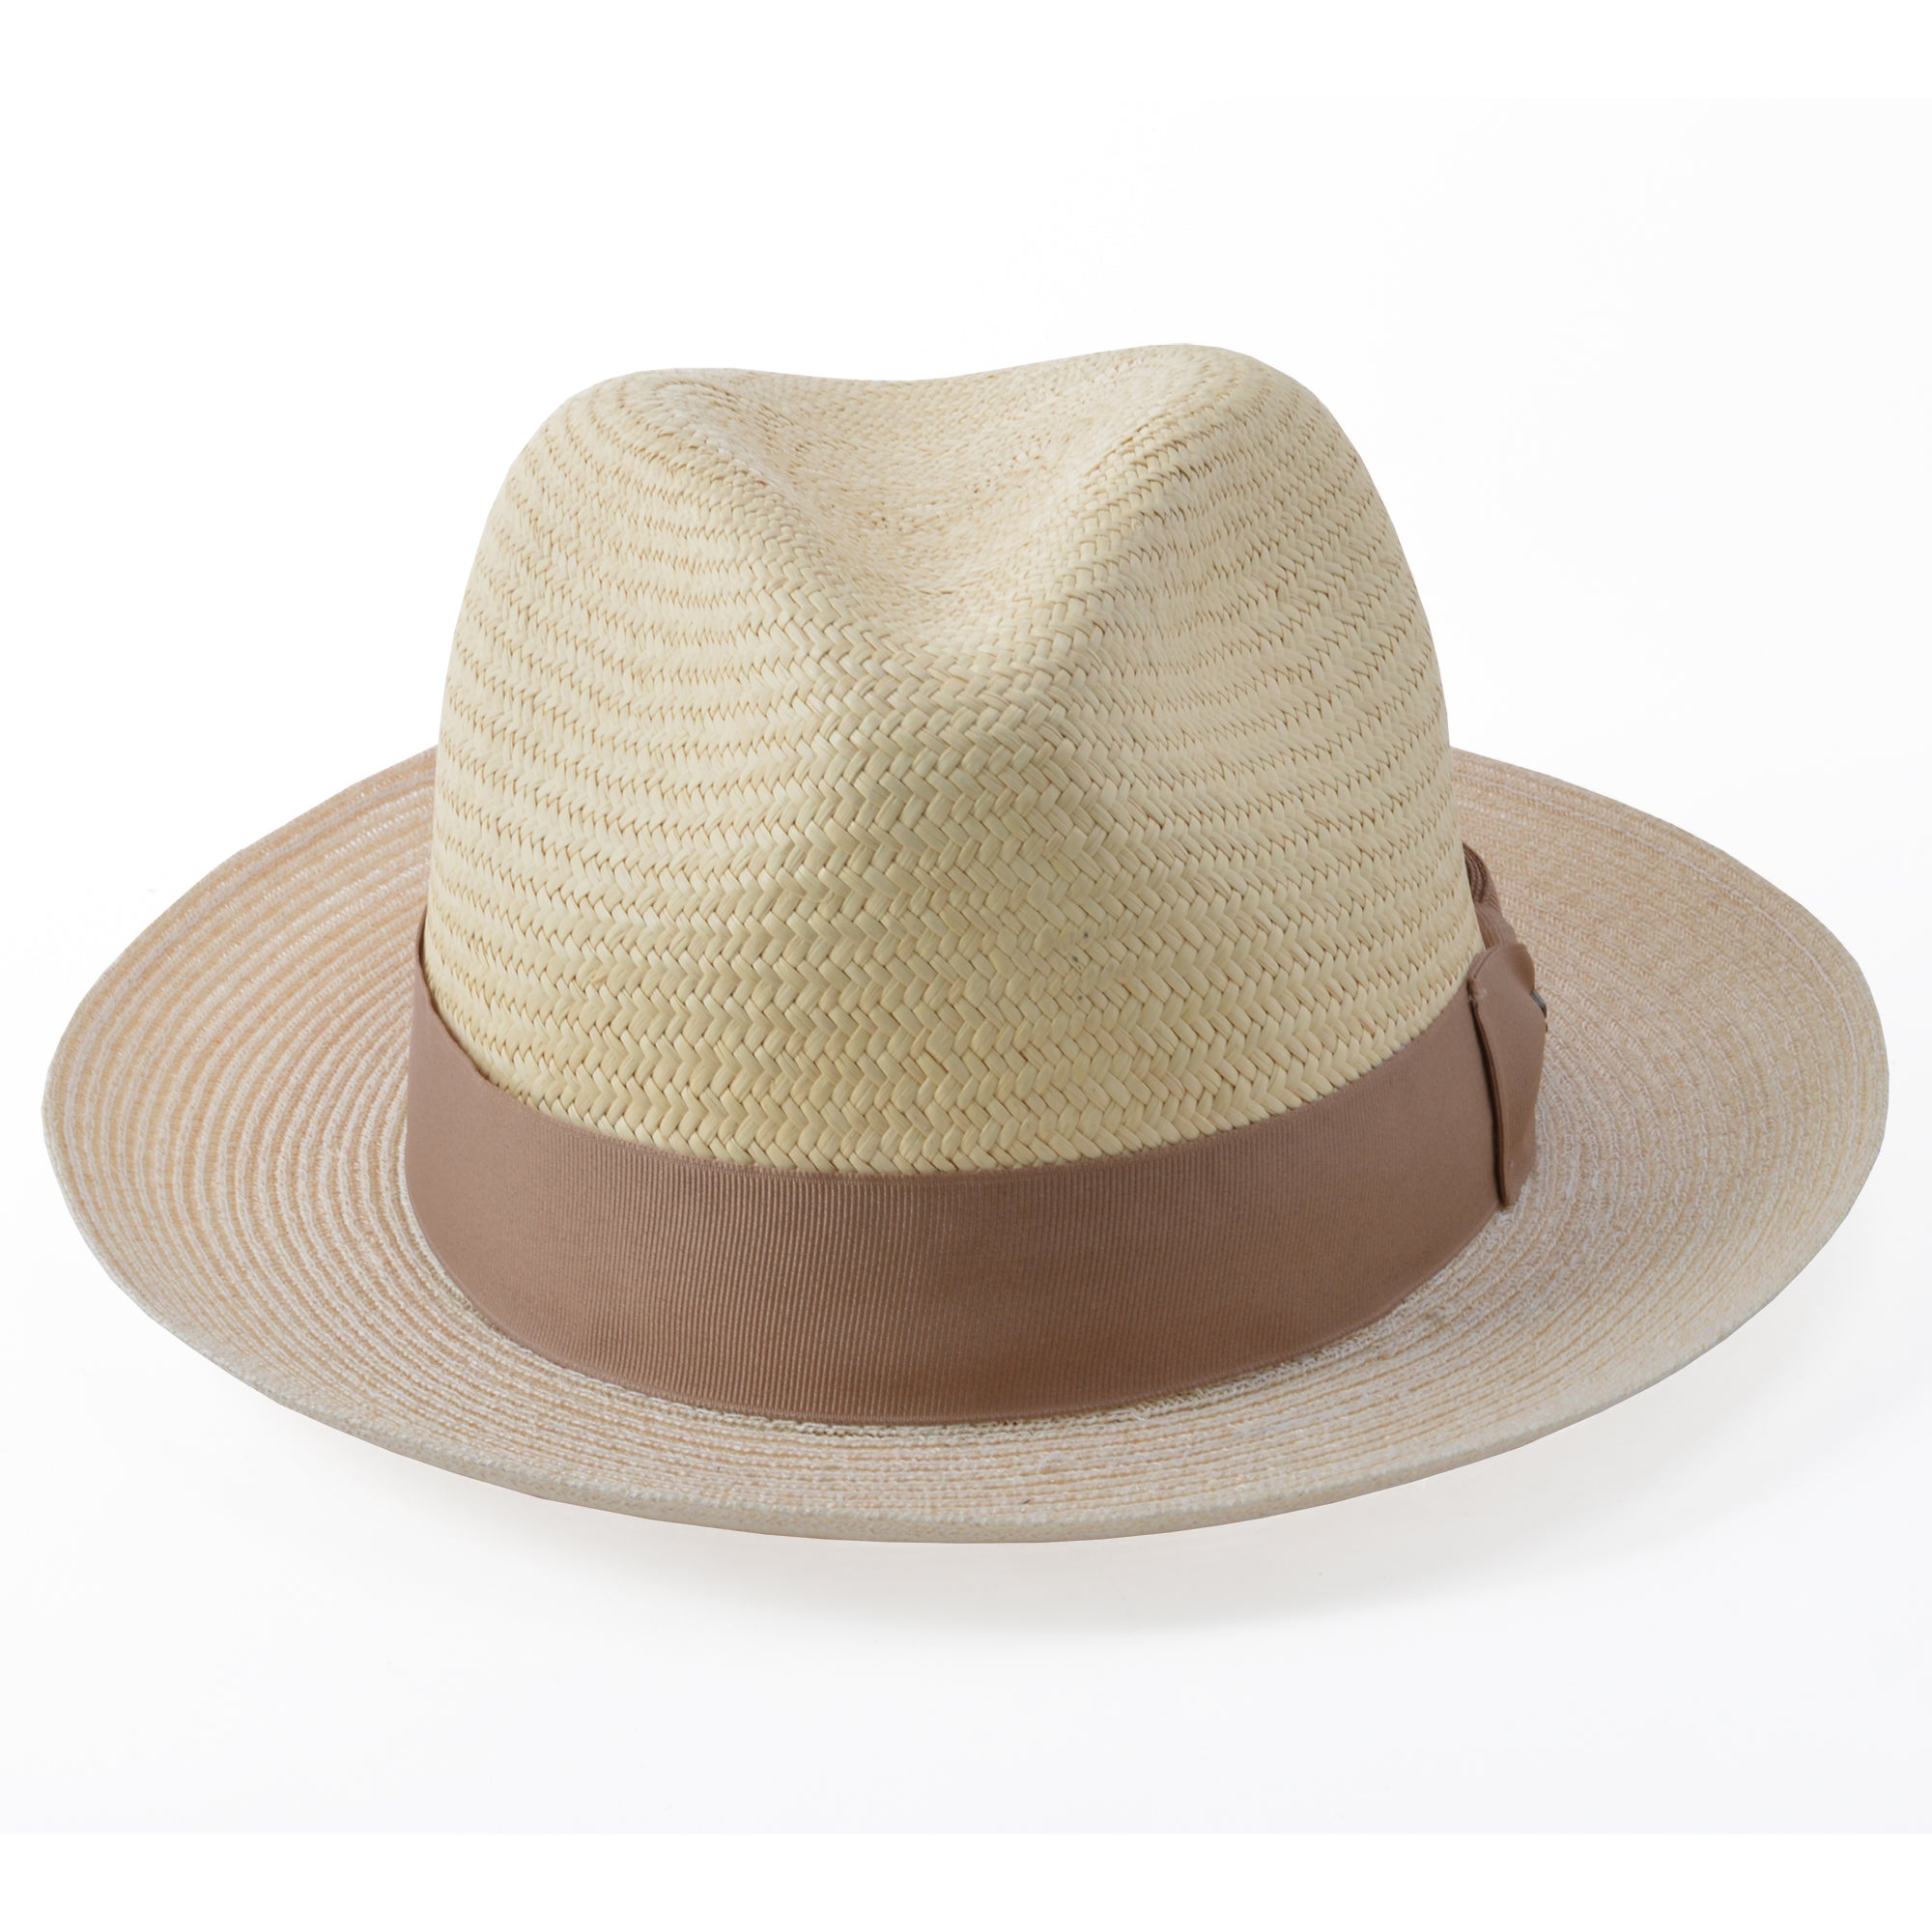 Stetson Aston Hemp & Panama Straw Fedora Hat